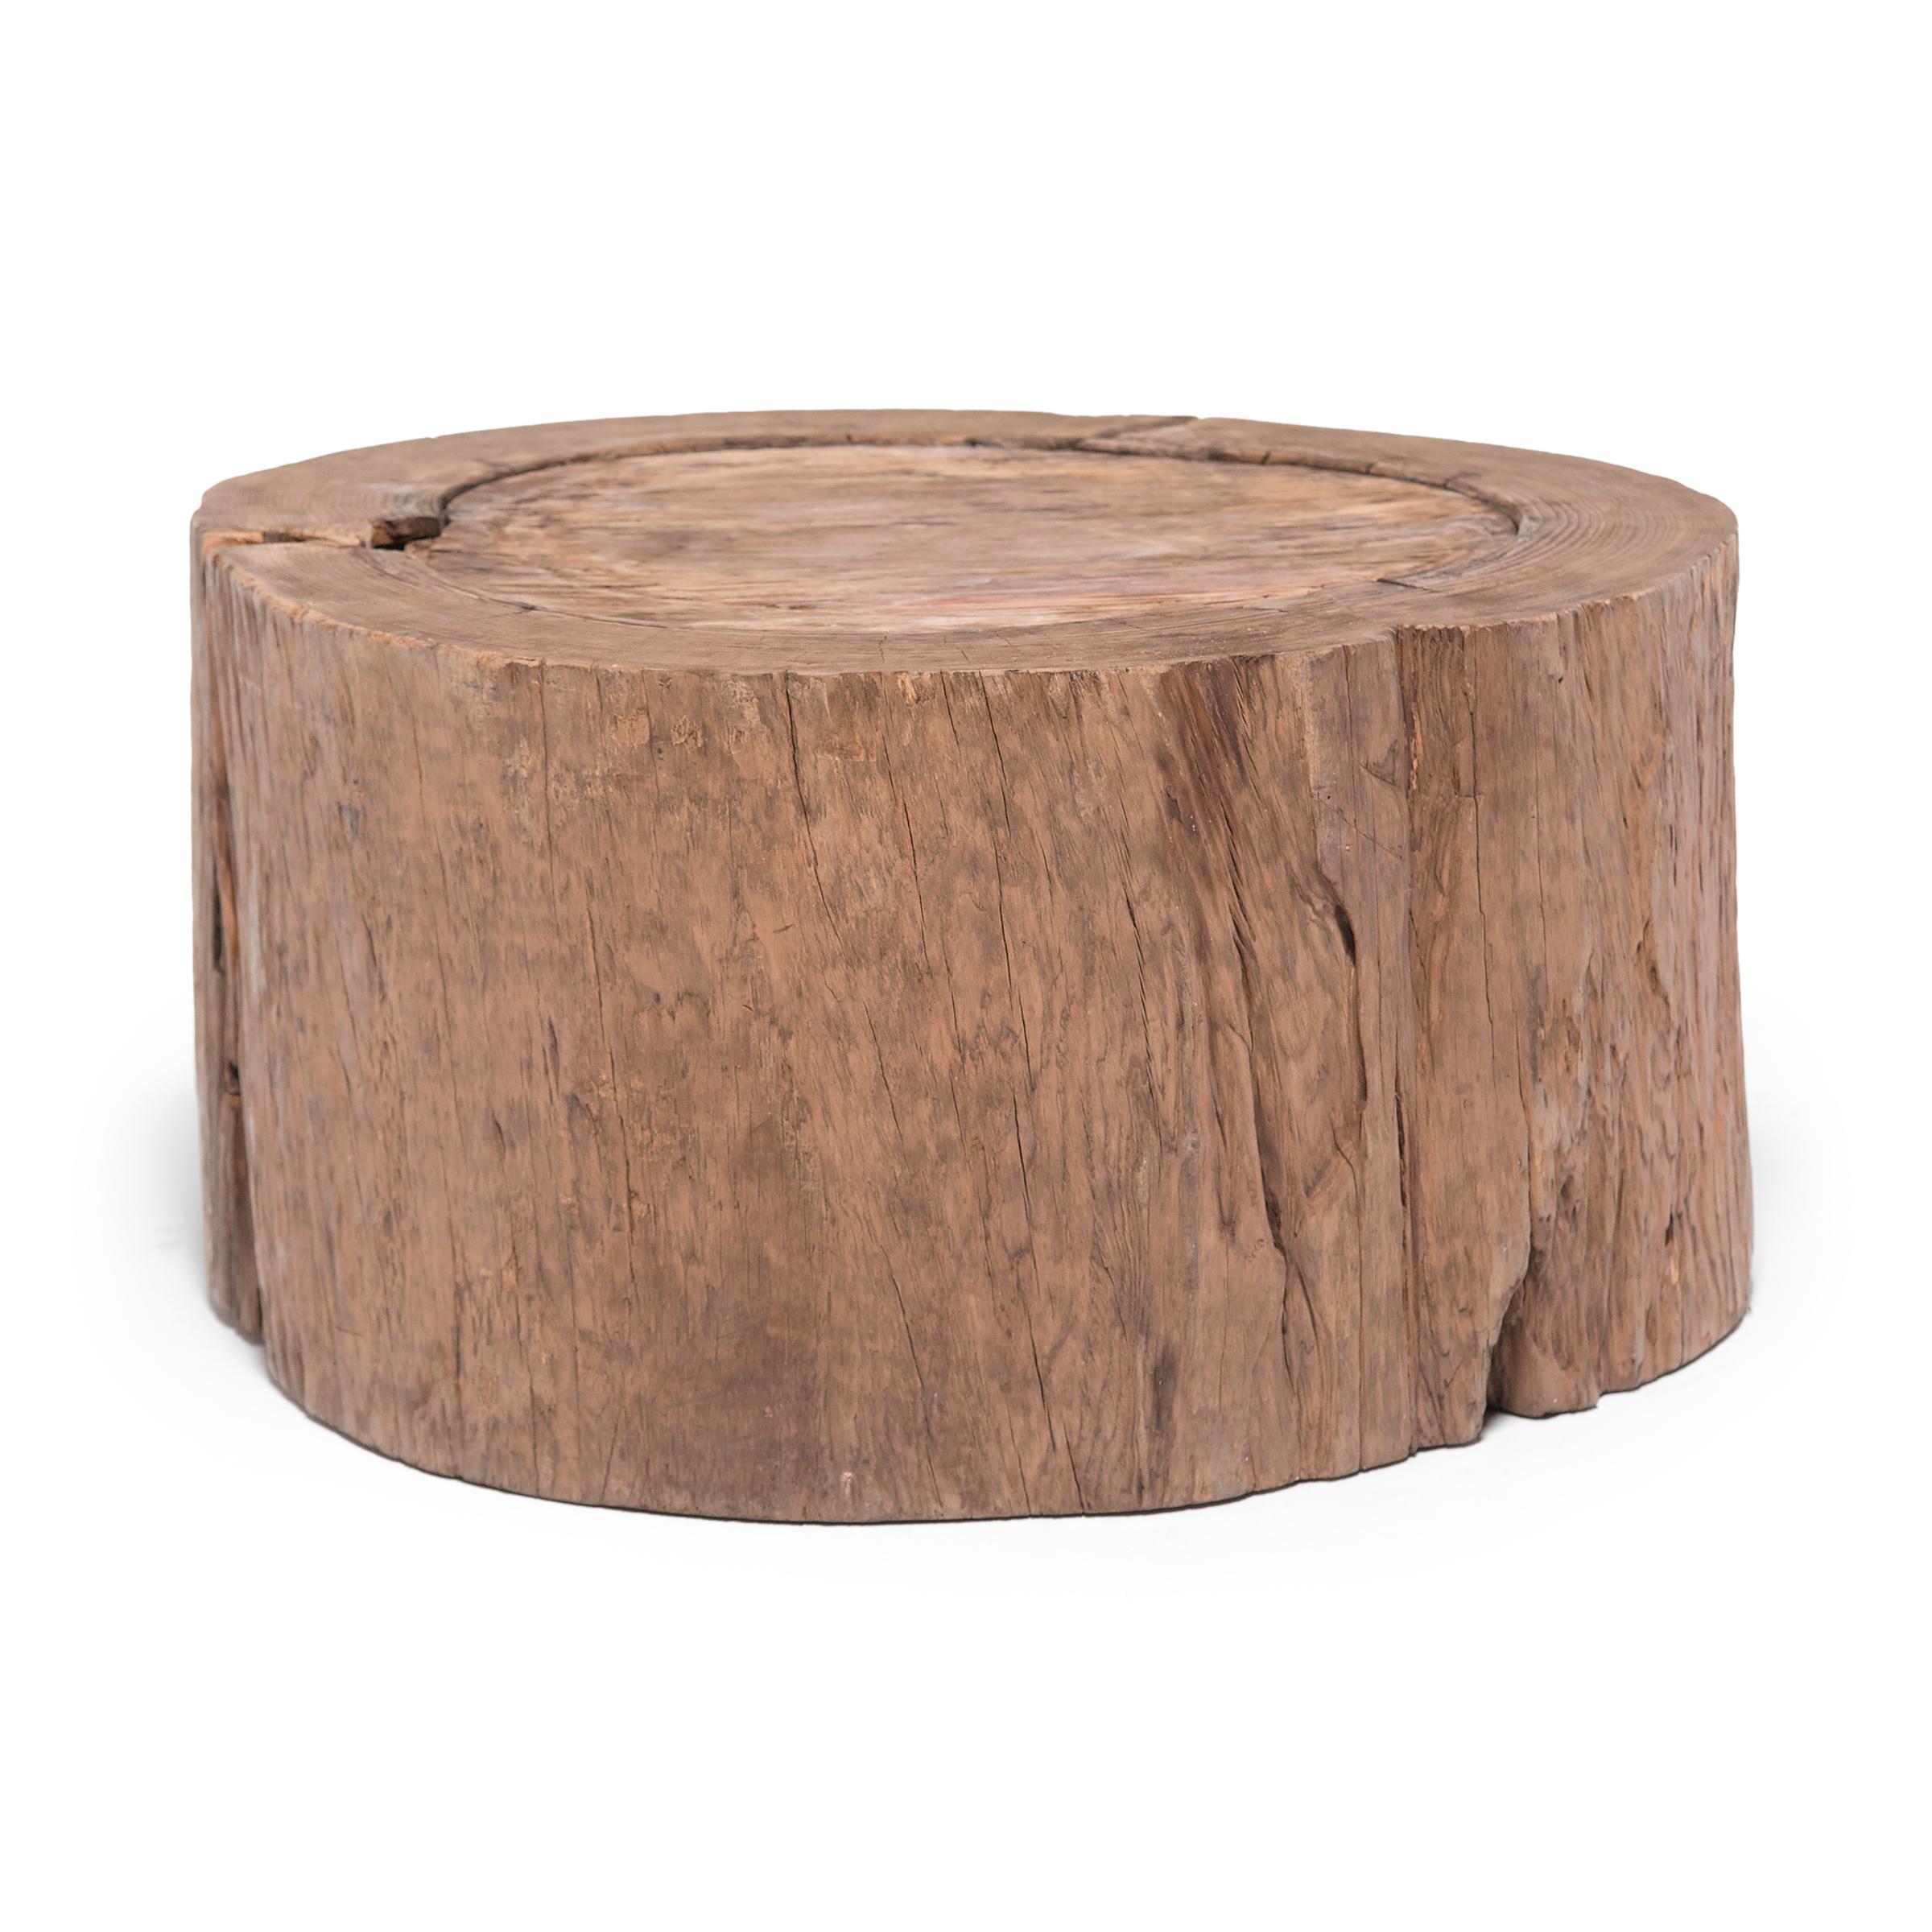 Chinese Round Organic Stump Table, circa 1850